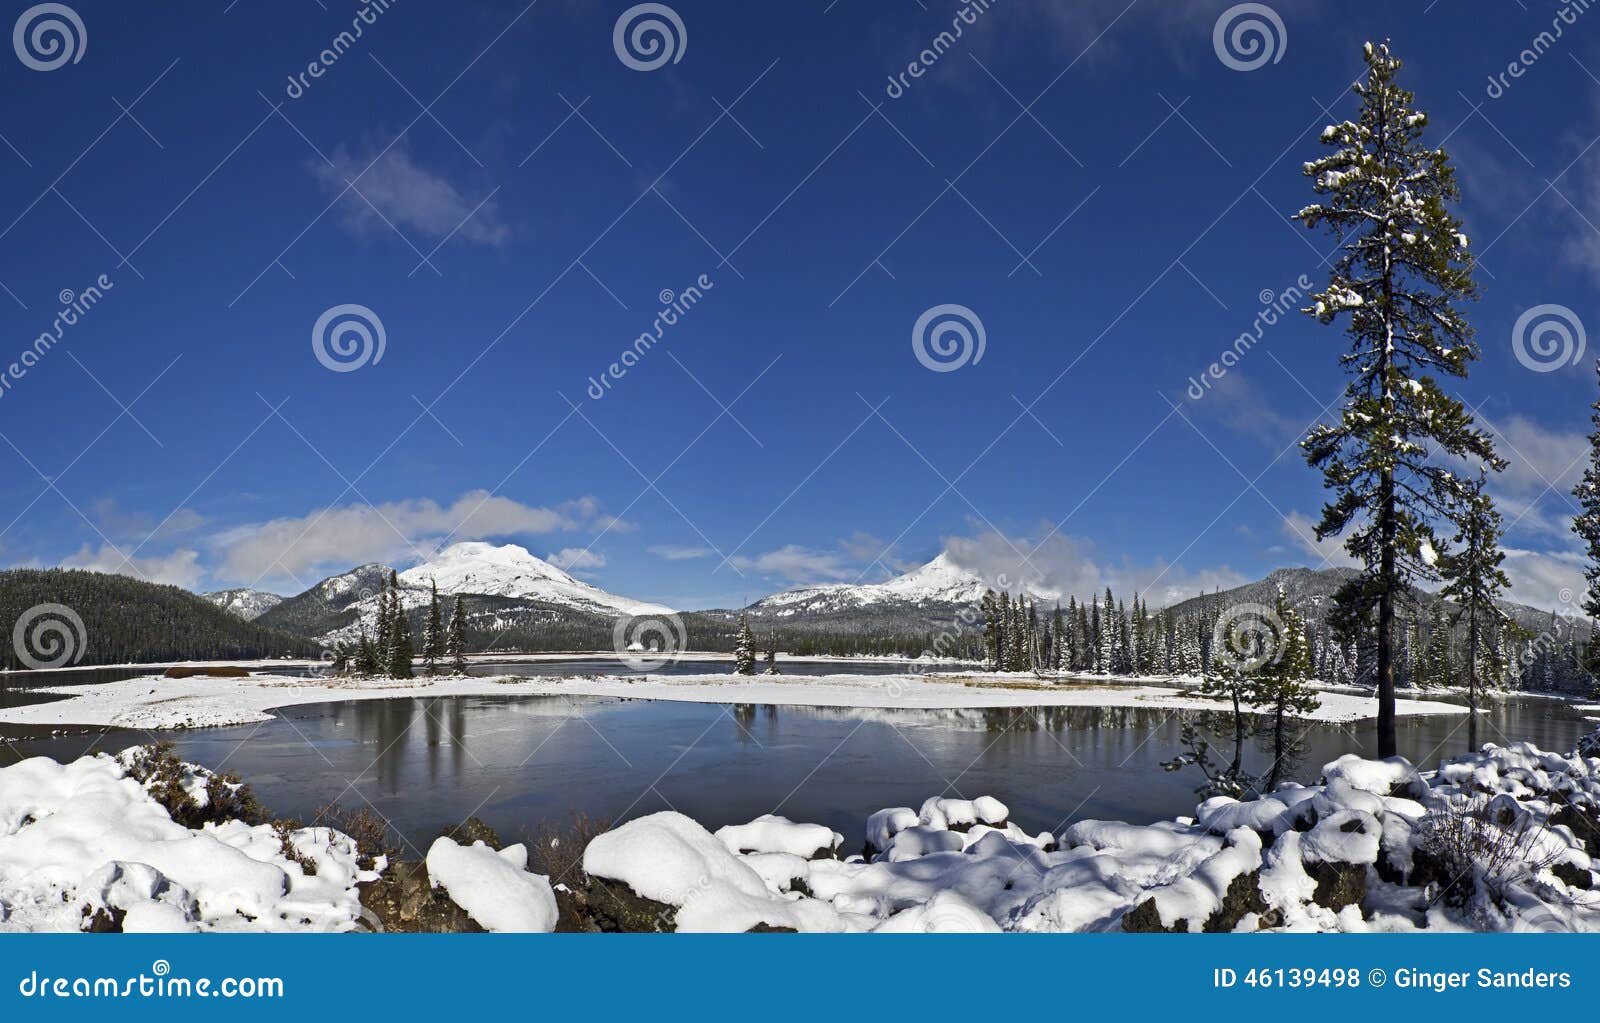 Neve di inverno a panorama del cielo blu del lago sparks. Panorama della neve di inverno sotto i cieli blu nel lago sulla strada principale dei laghi cascade, Oregon sparks